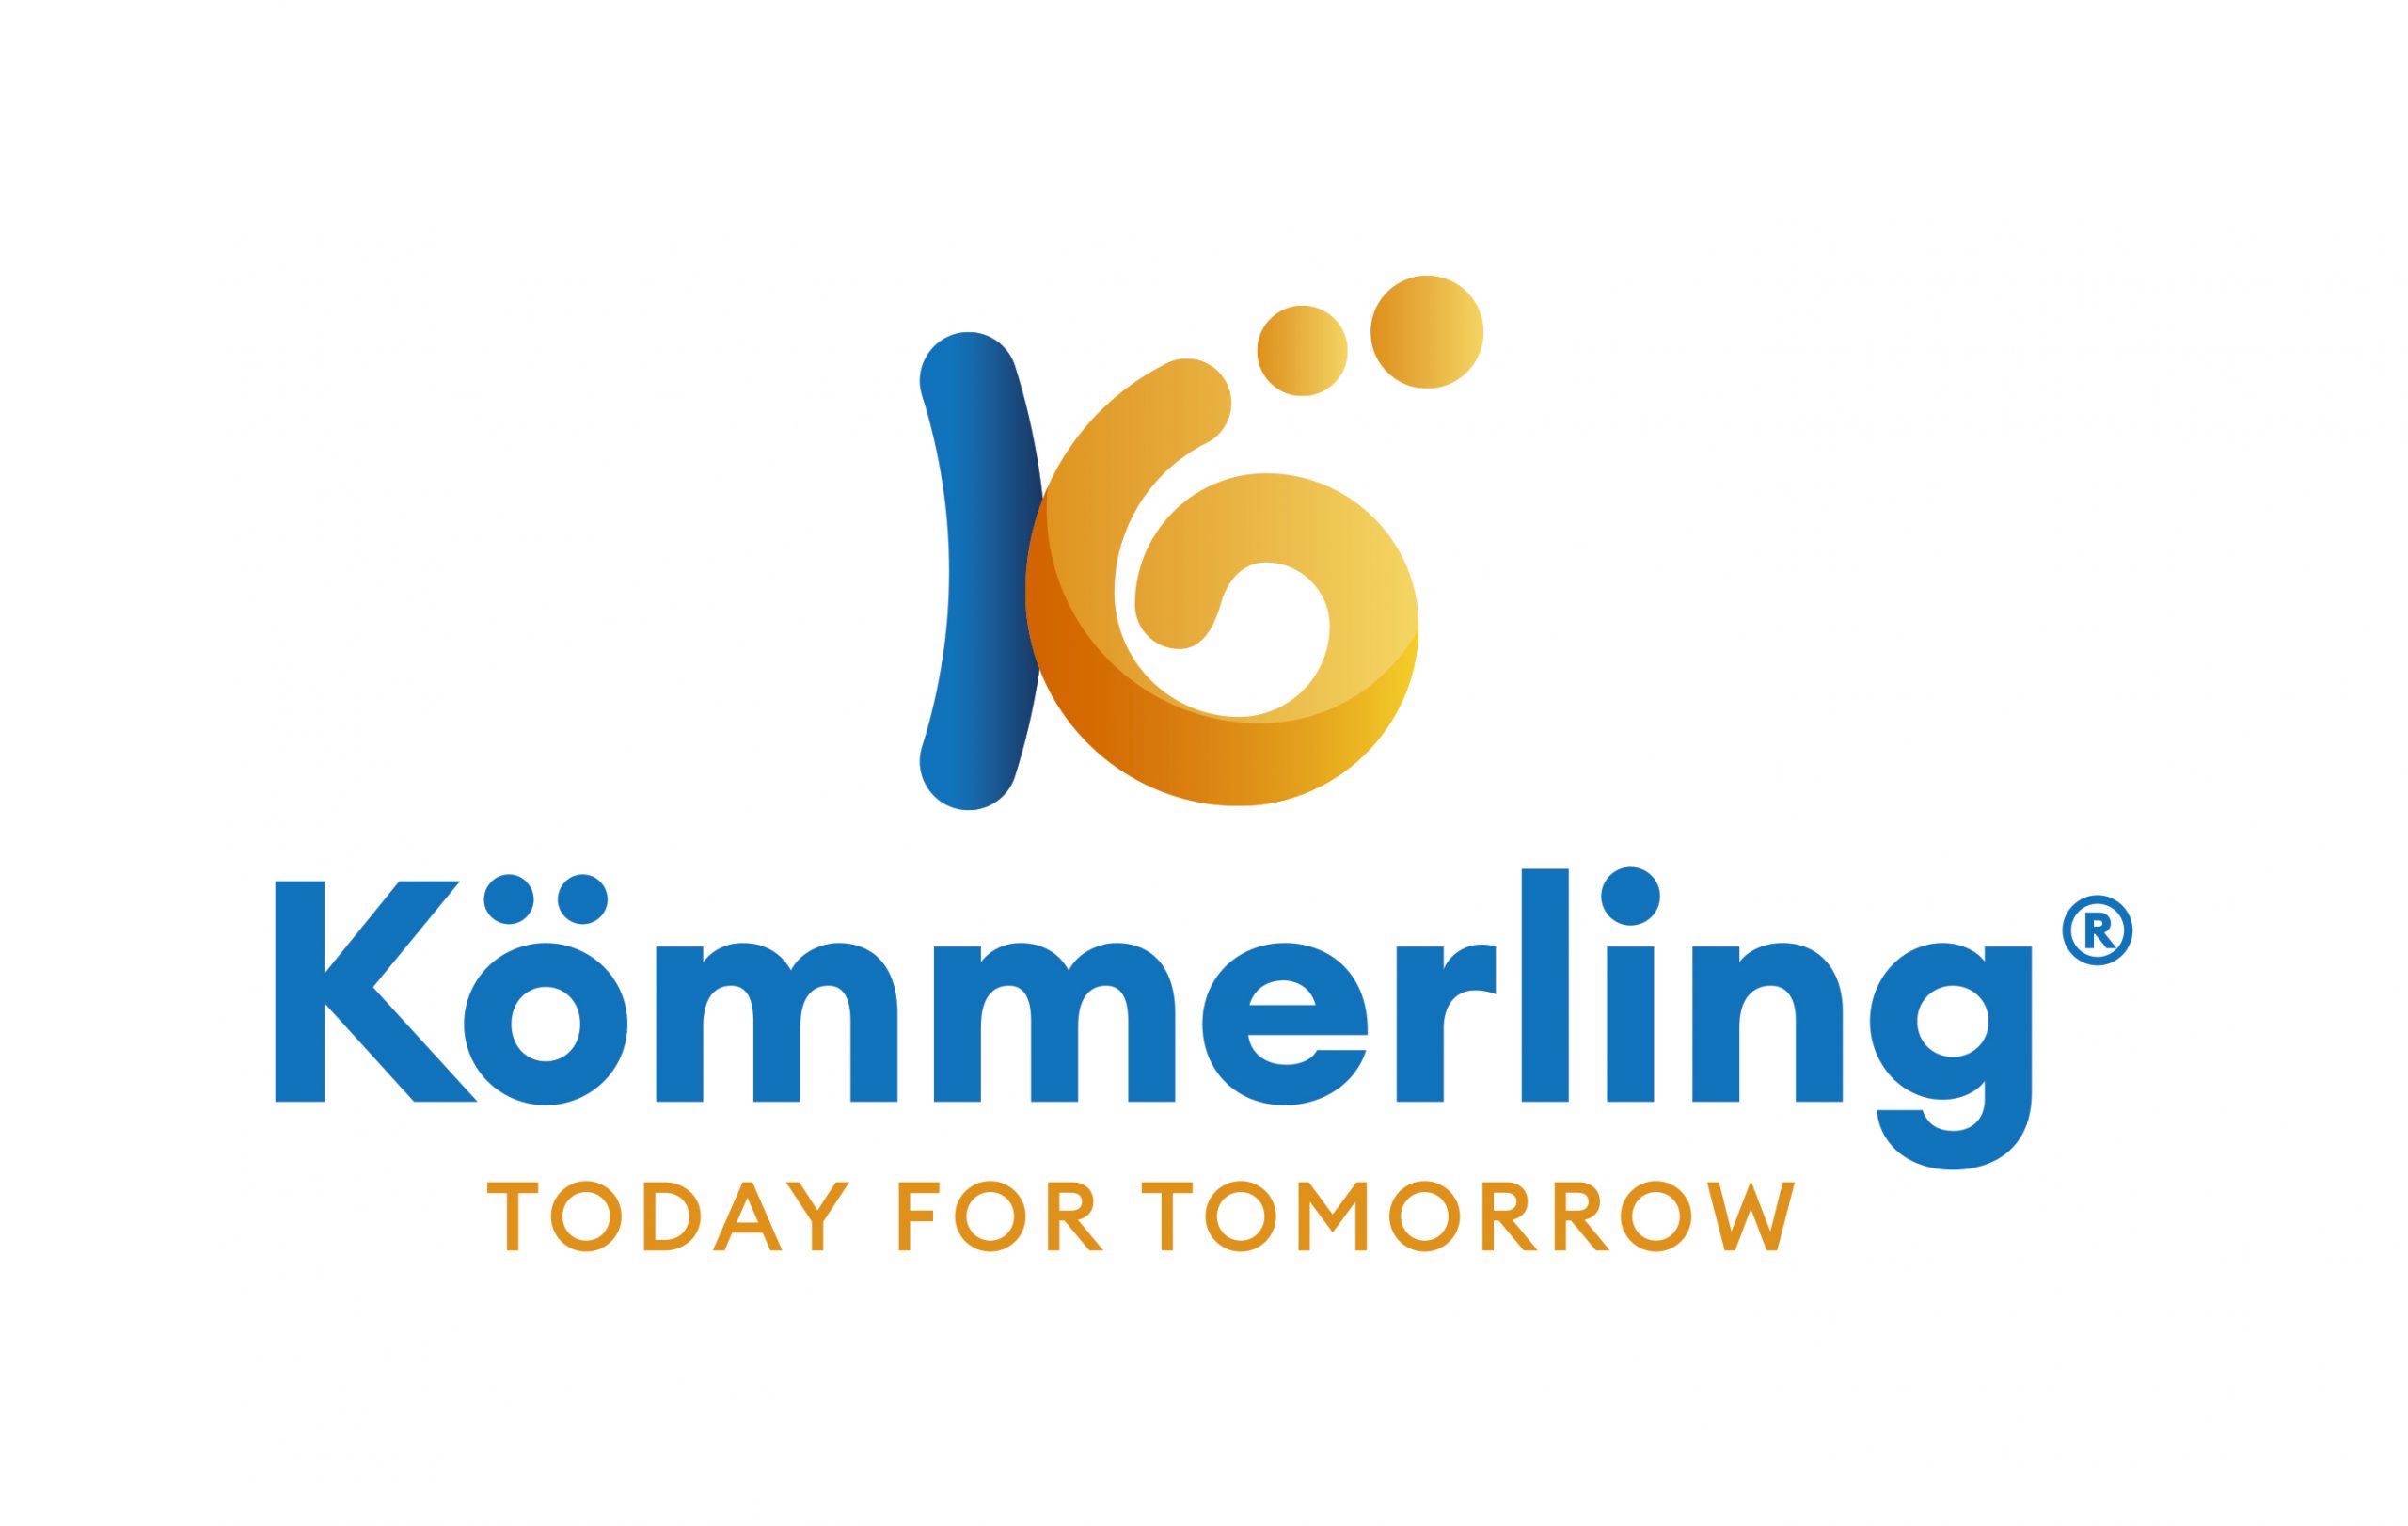 Kömmerling: sostenibilità e responsabilità sociale - Guidafinestra